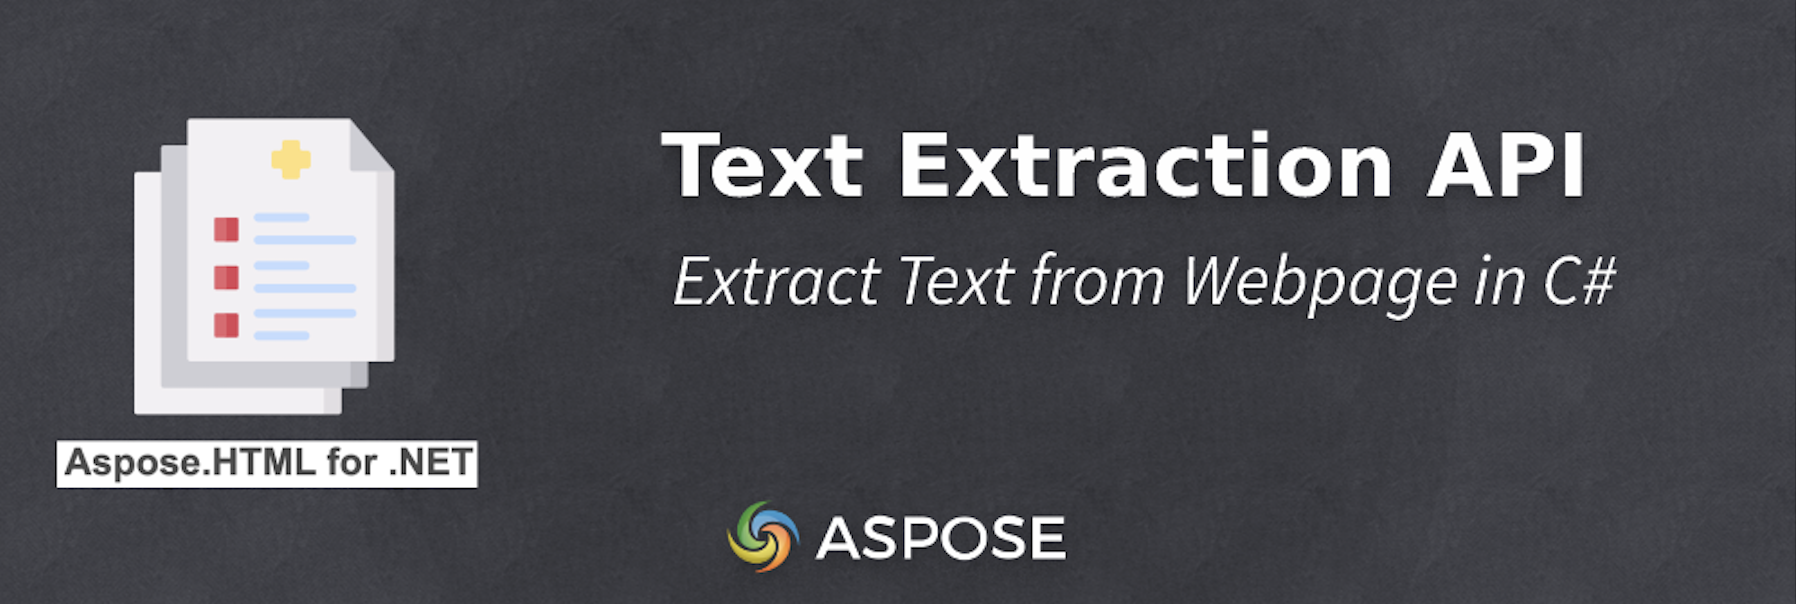 Extraia texto de uma página da Web em C# - API de extração de texto